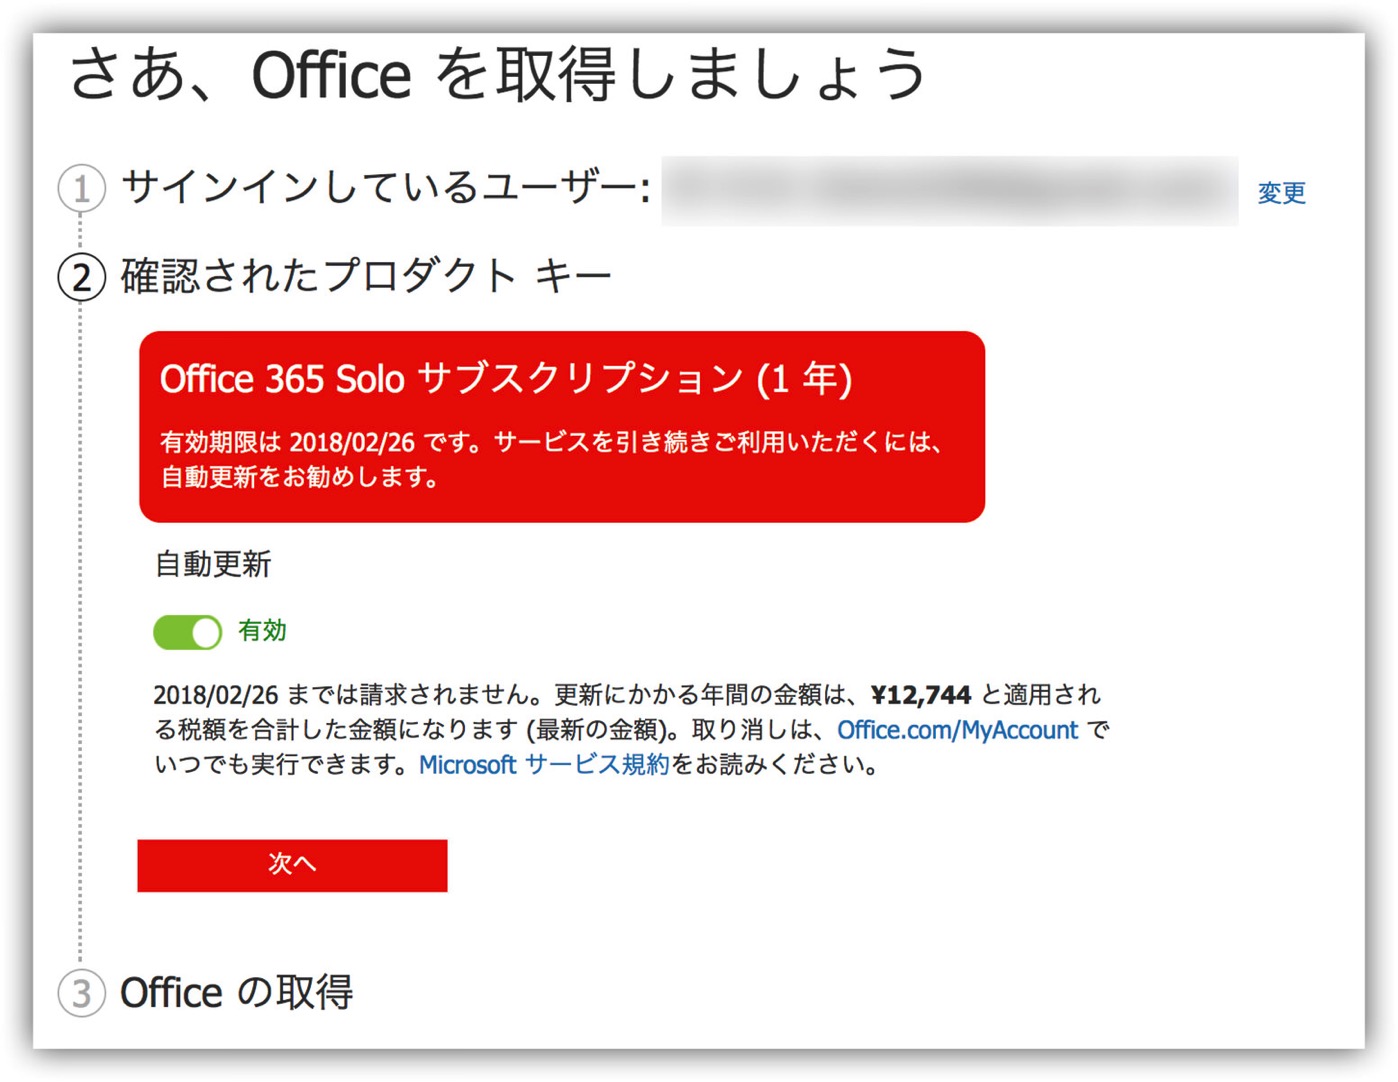 Microsoft Office 365 Solo -4